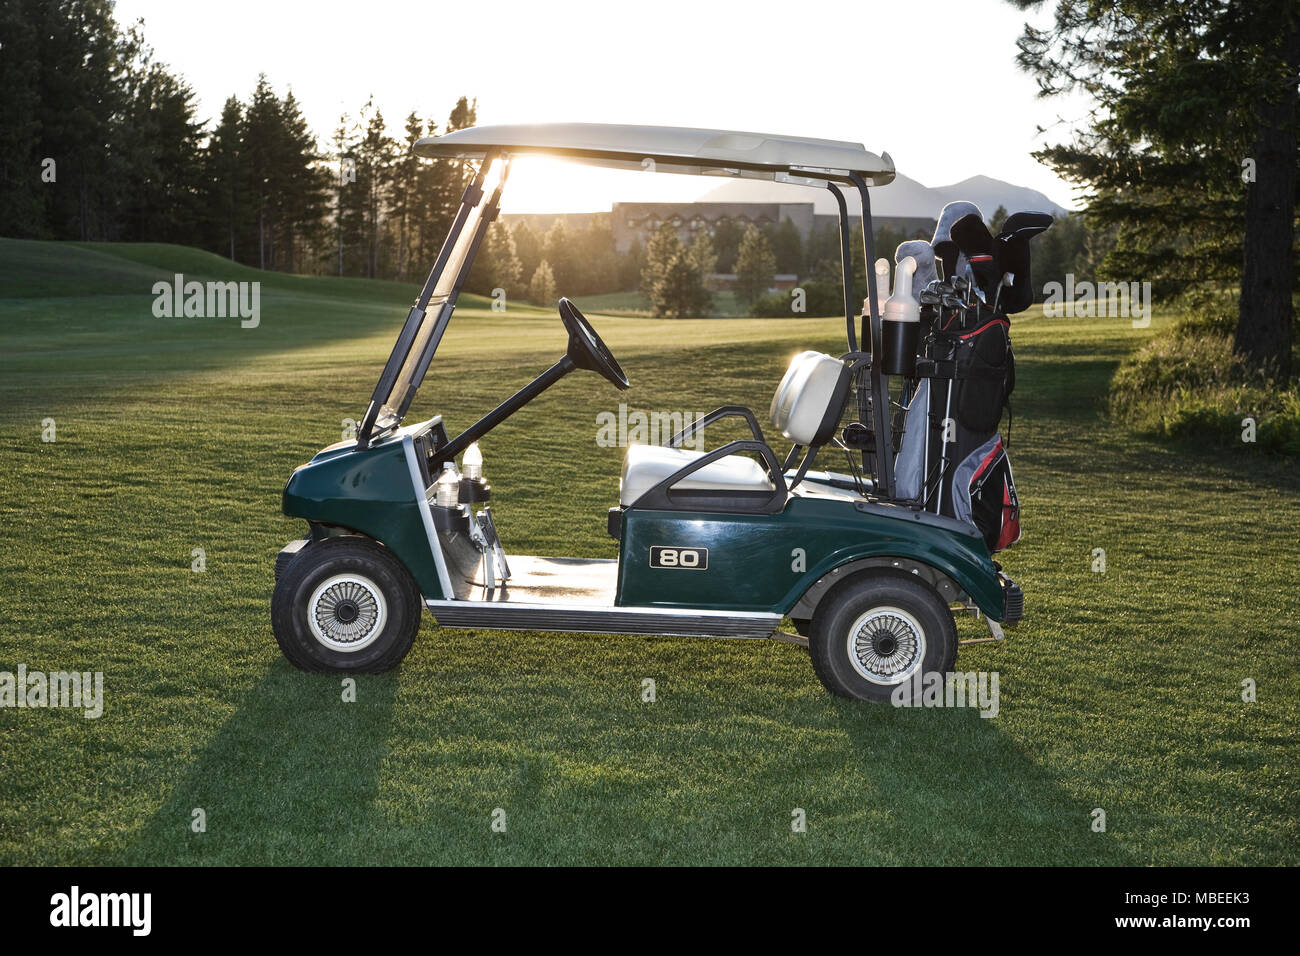 Un chariot de golf avec des sacs assis sur un terrain de golf. Banque D'Images